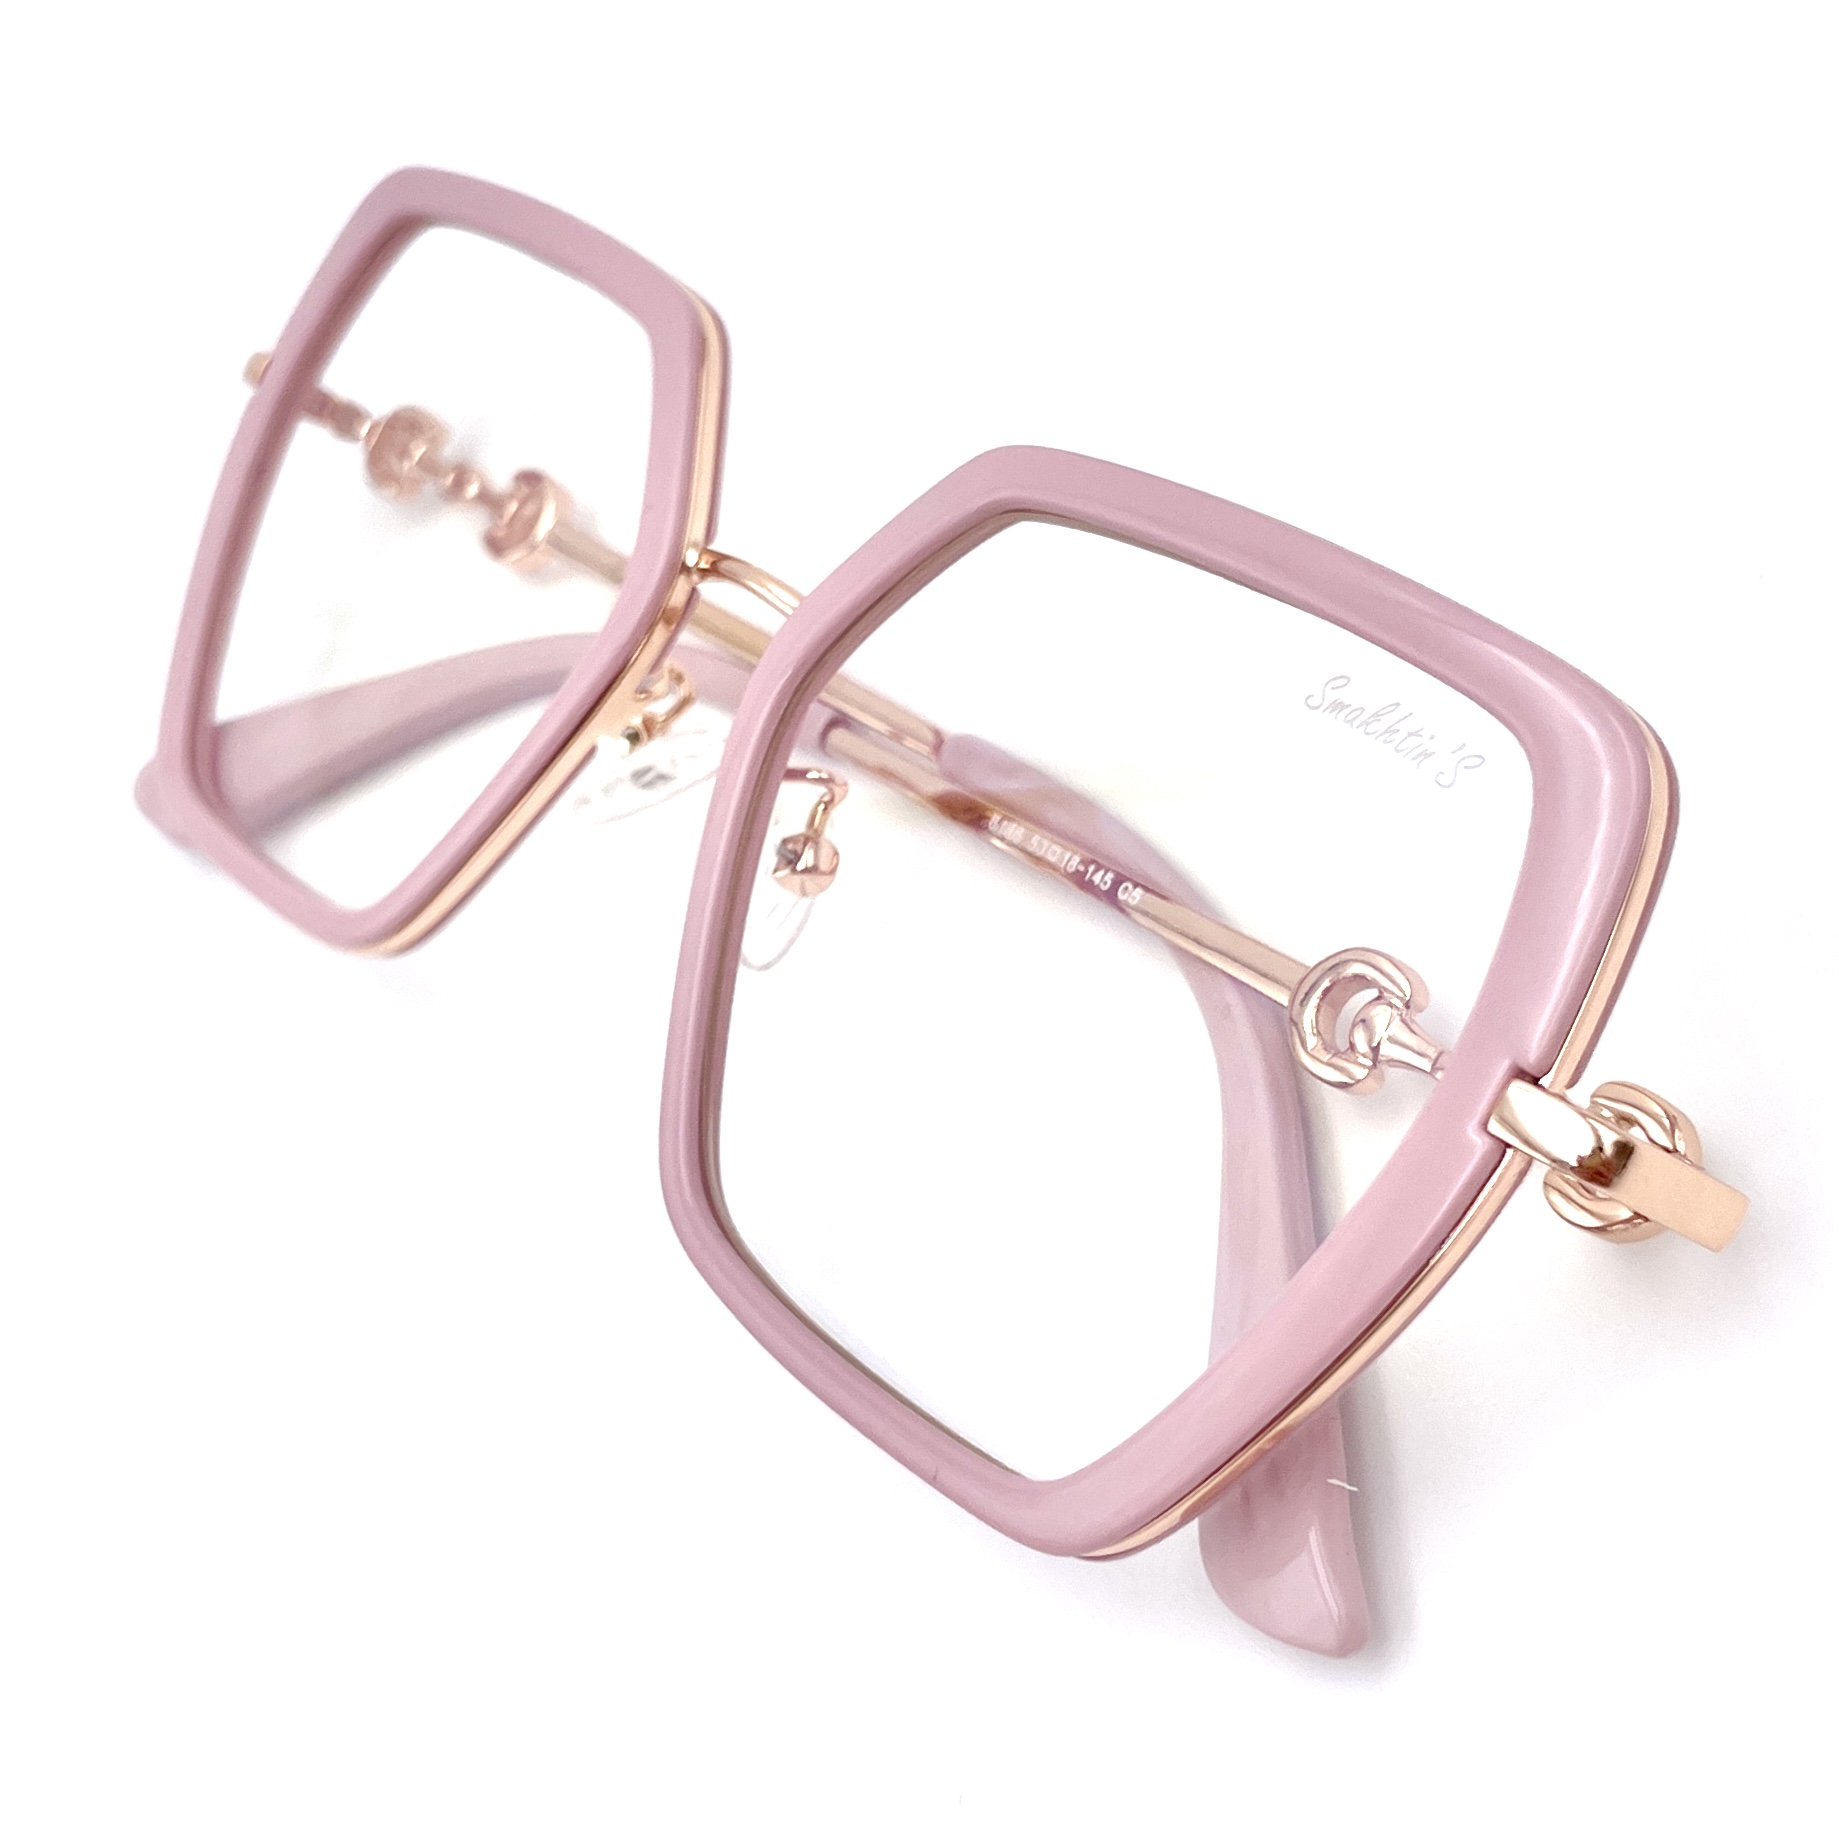 фото Очки для компьютера smakhtin's eyewear & accessories золотистый, розовый (6186c5)